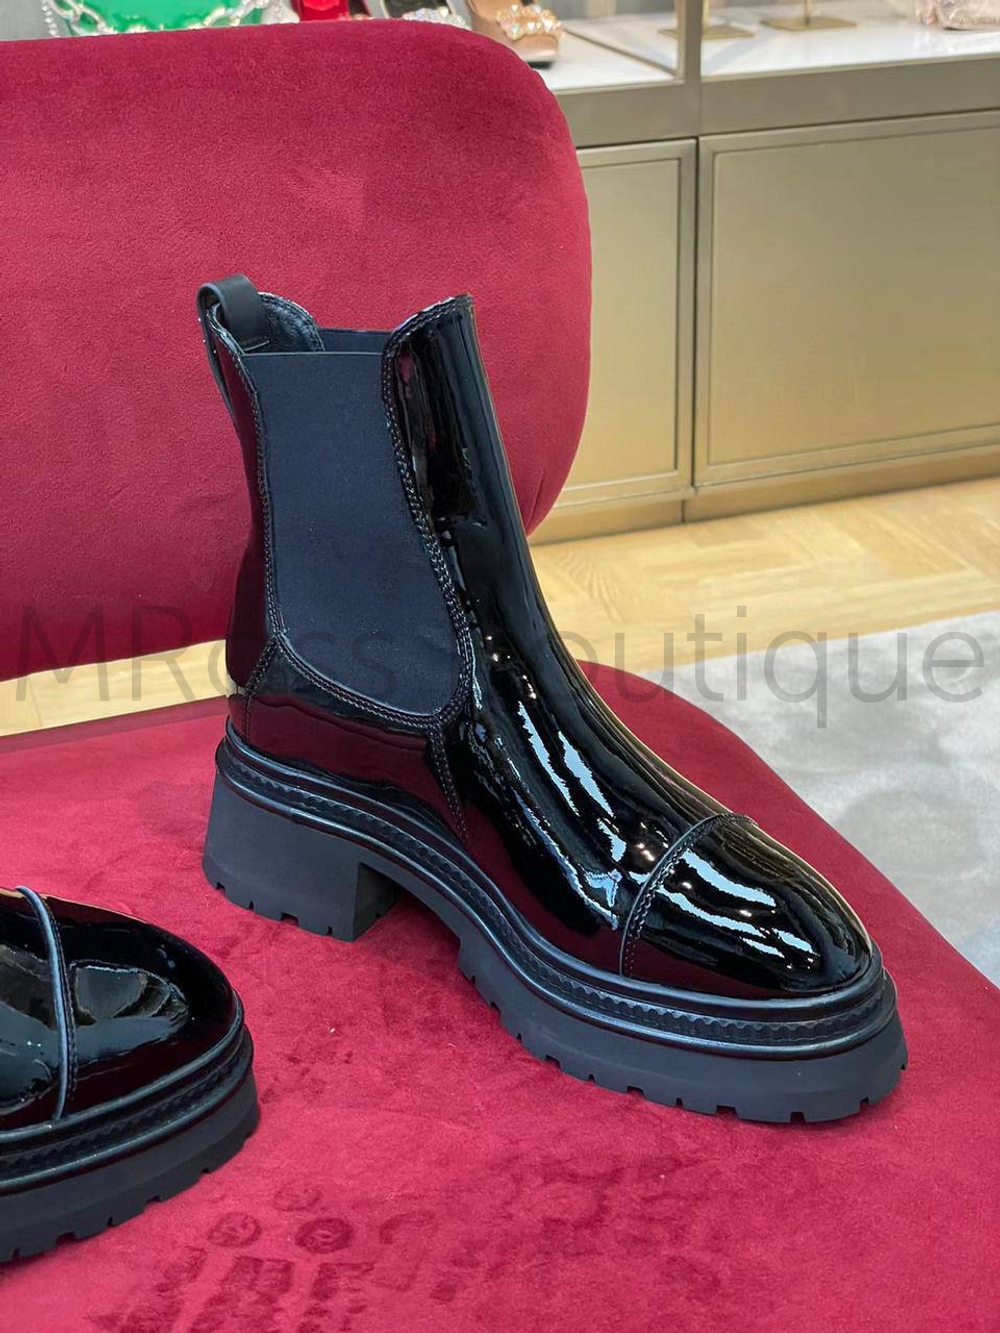 Ботинки лаковые челси Chanel (Шанель) премиум класса